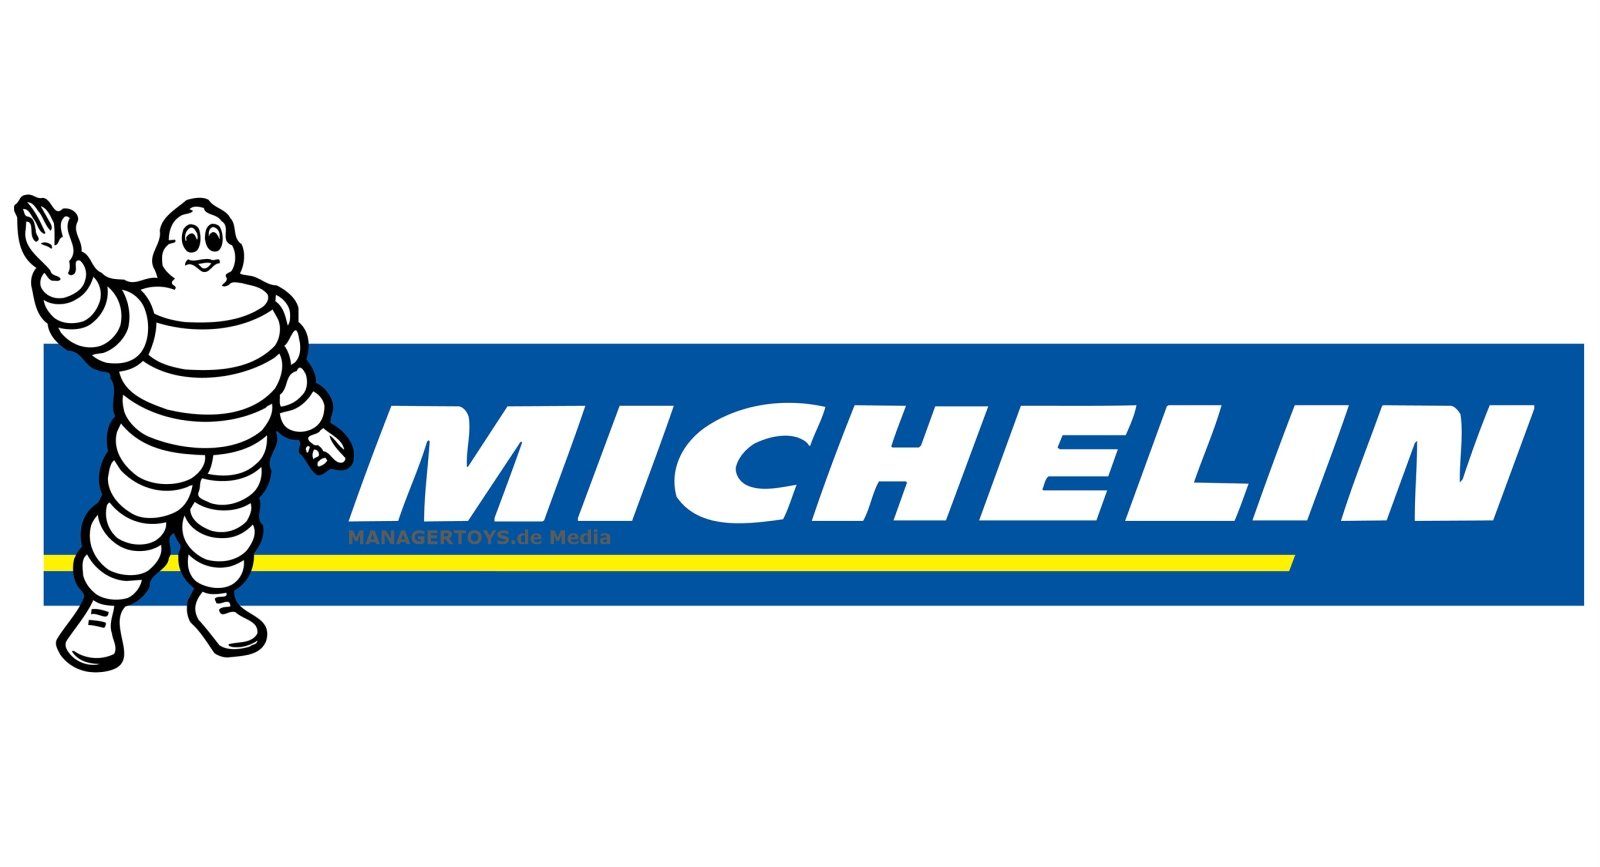 KFZ Michelin Powerbank Starter Akku Starthilfegerät Ladegerät mAh 12.000 MJS120 Auto Jump